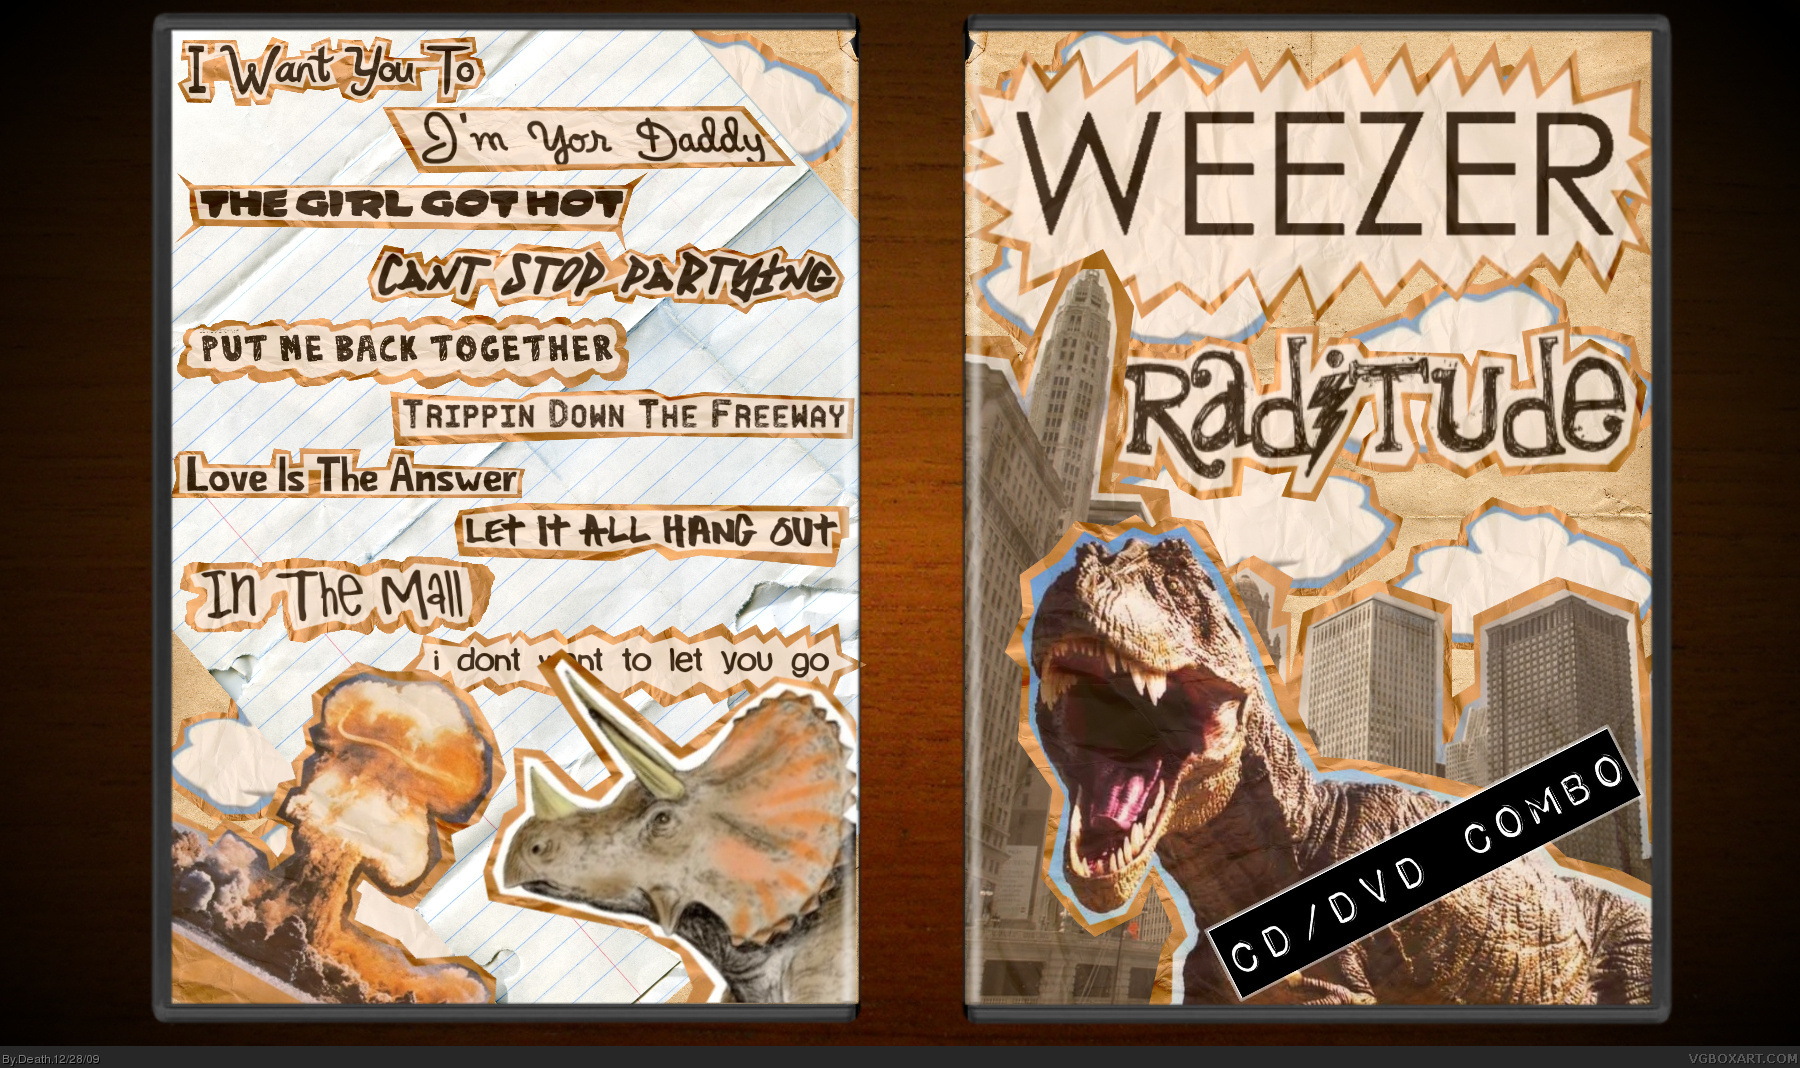 Weezer: Raditude box cover